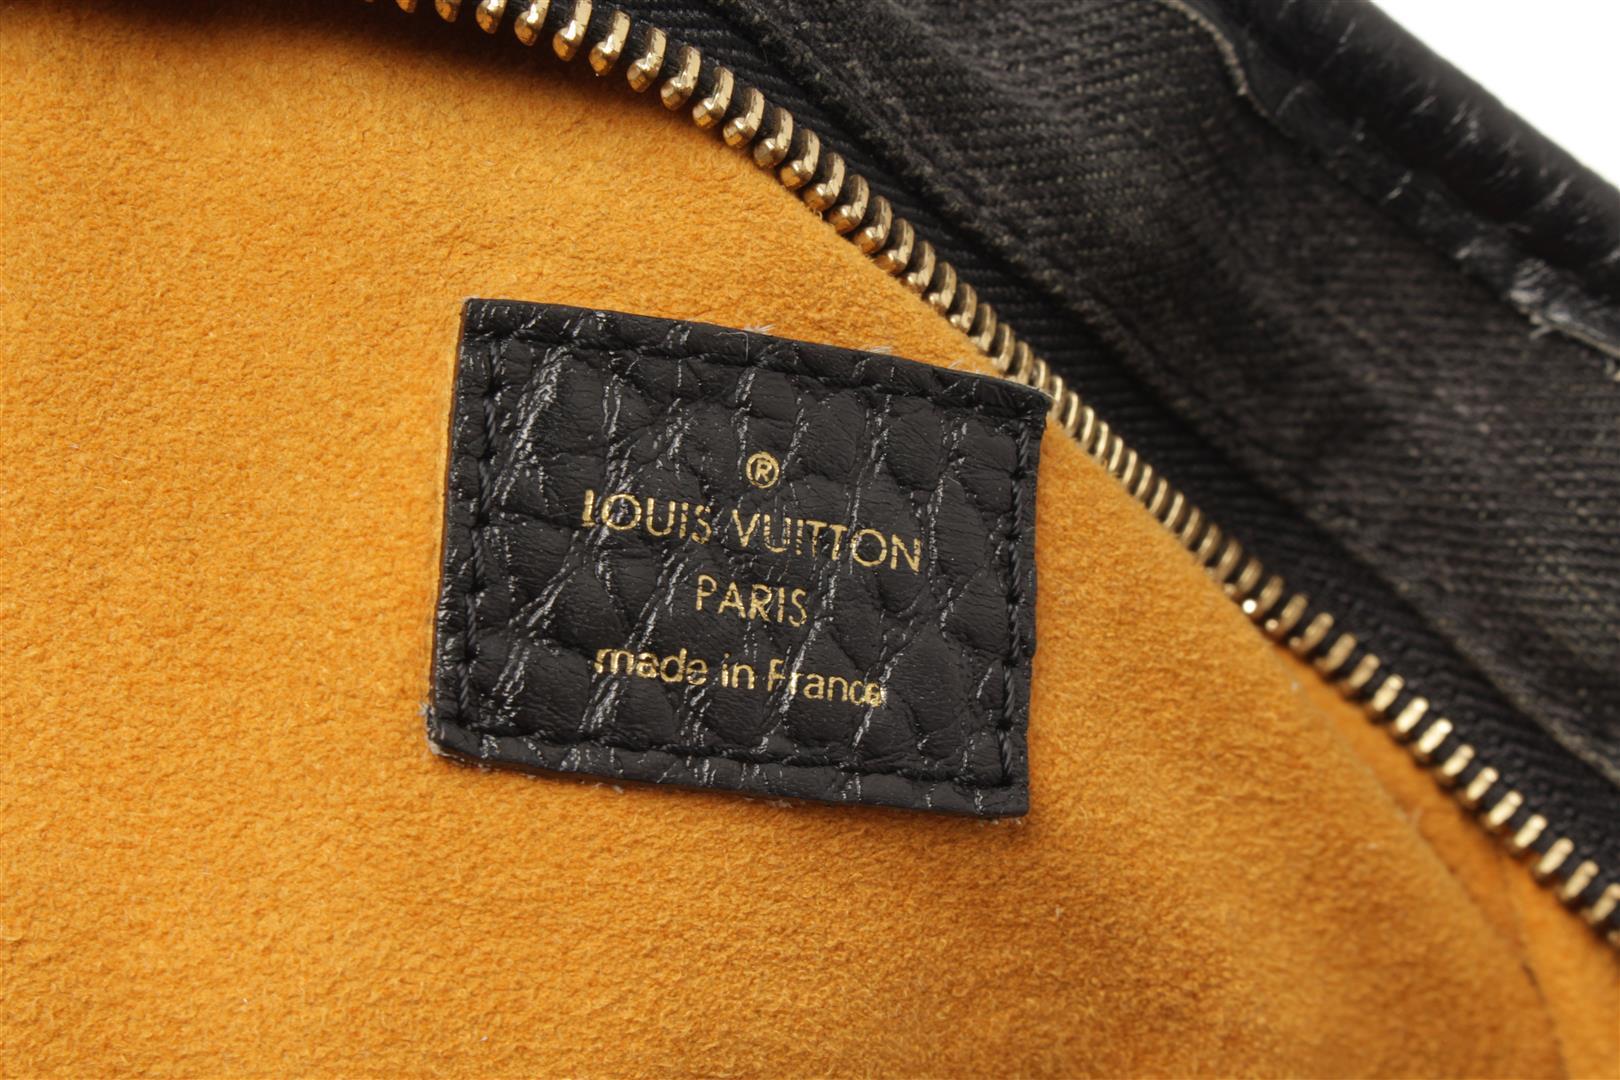 Louis Vuitton Black Denim Neo Cabby MM Shoulder Bag